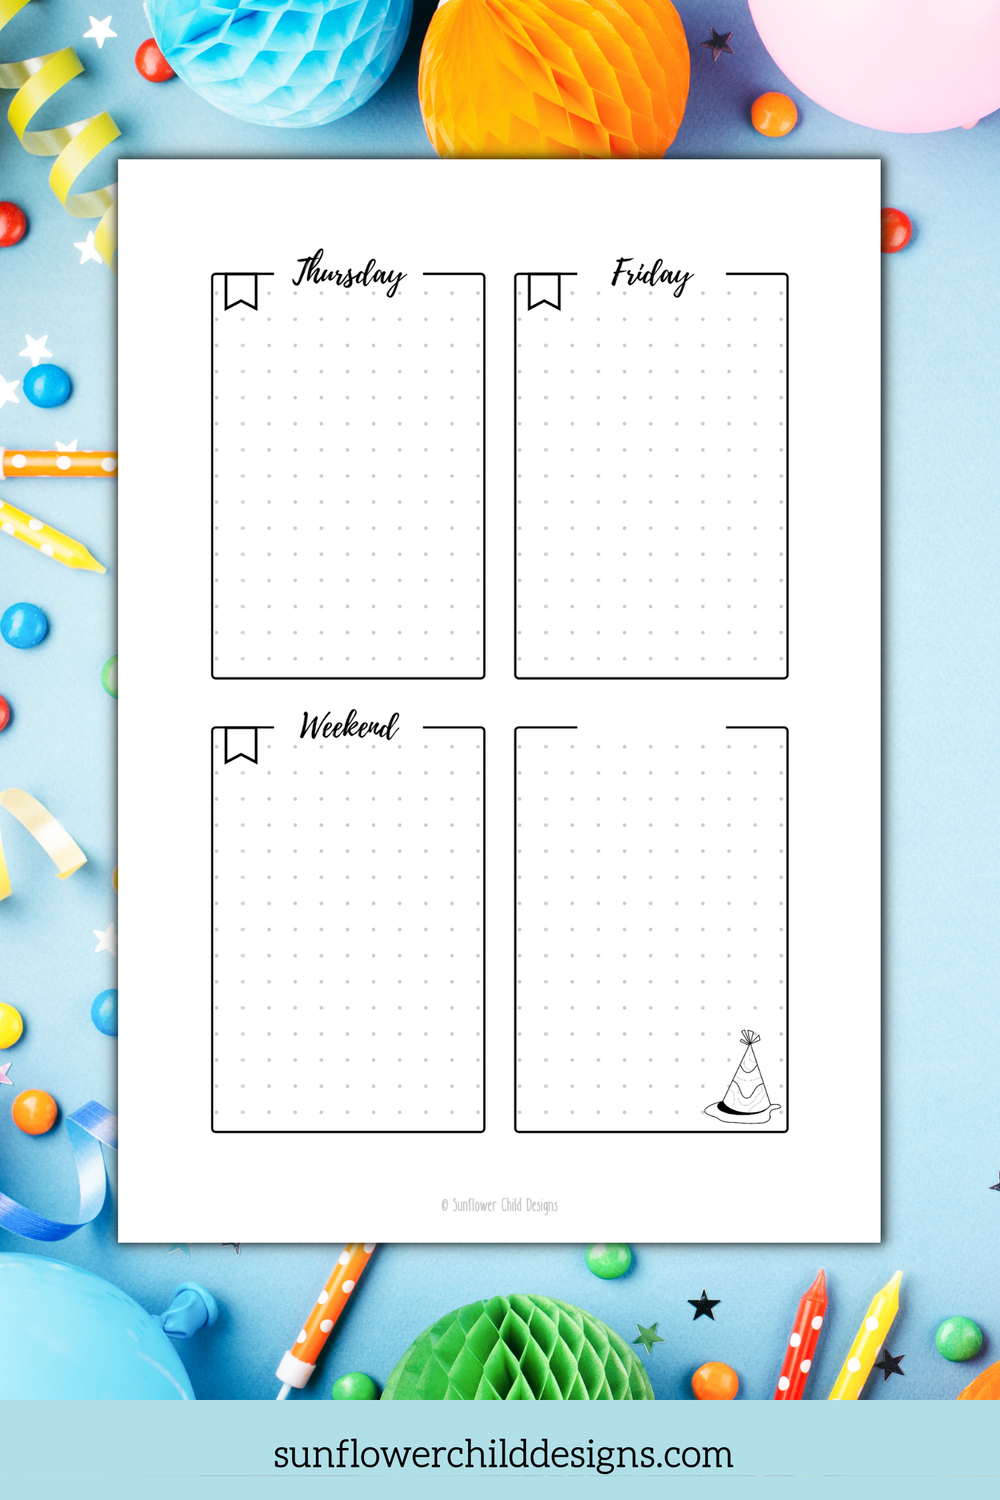 Birthday Journal Kit, Celebrations Planner Decor